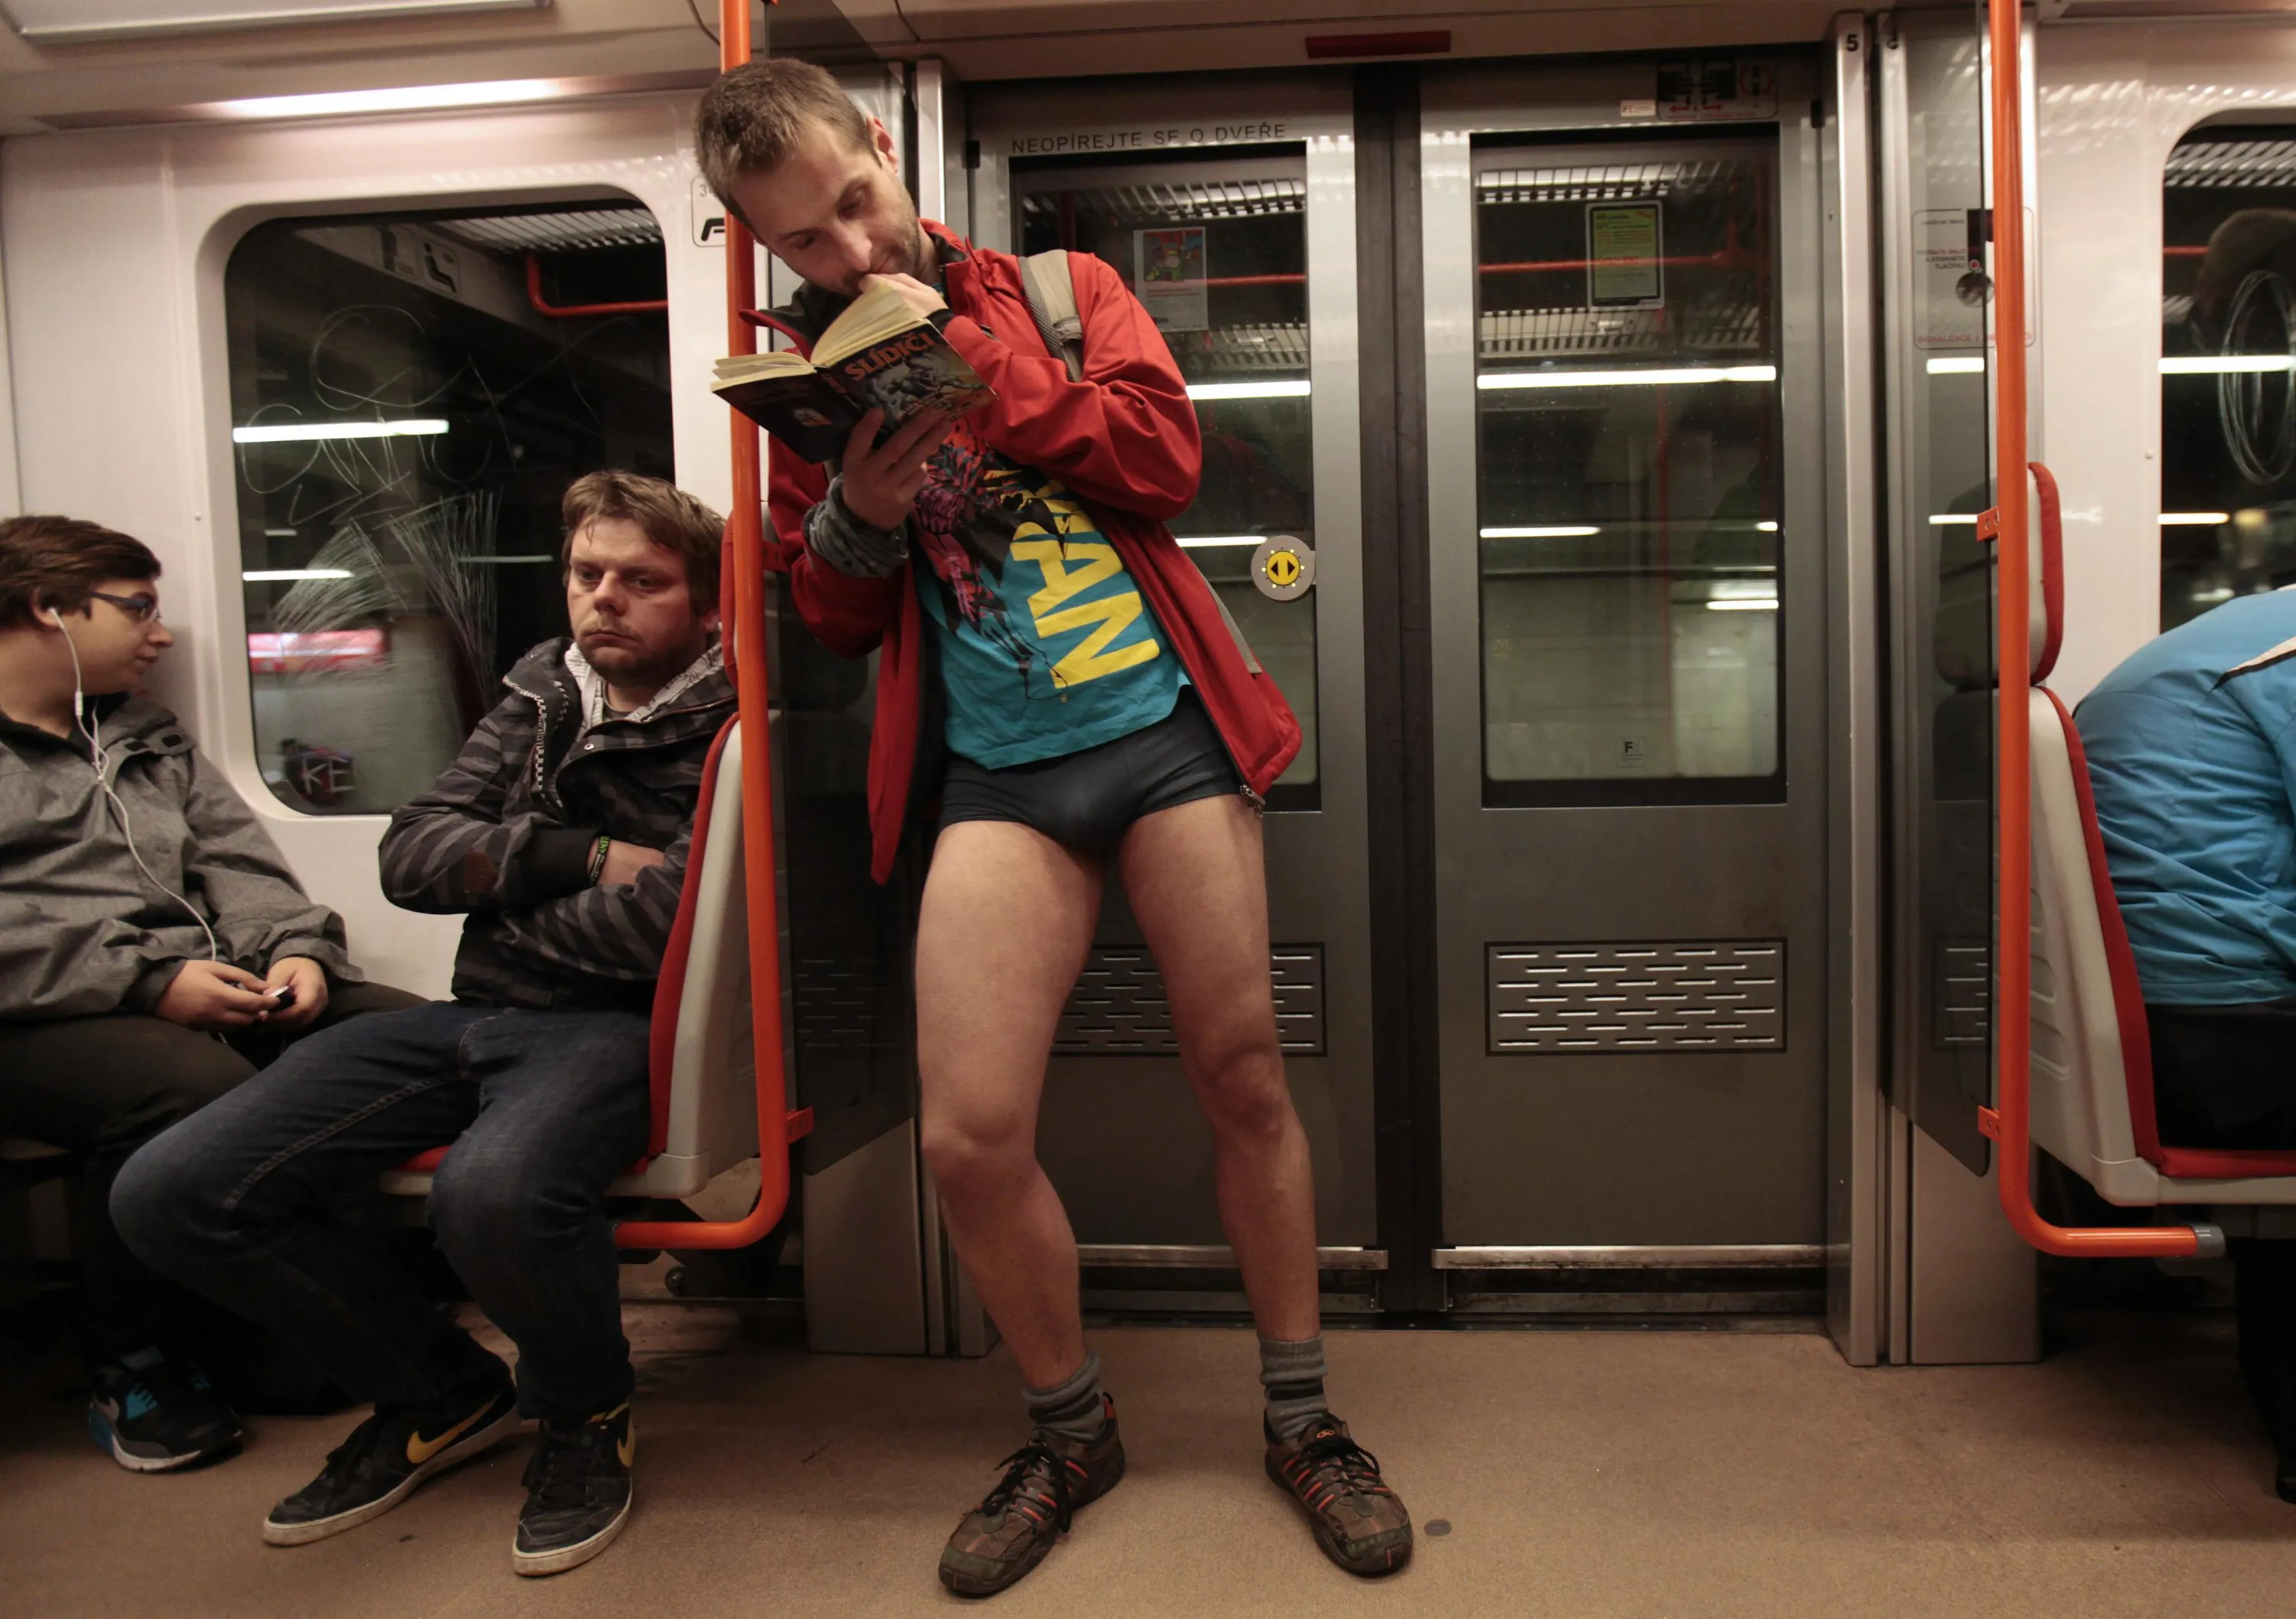 Без штанов домашнее. В метро без штанов. Мужчины в метро без штанов. Пацаны без штанов. Парень в метро.